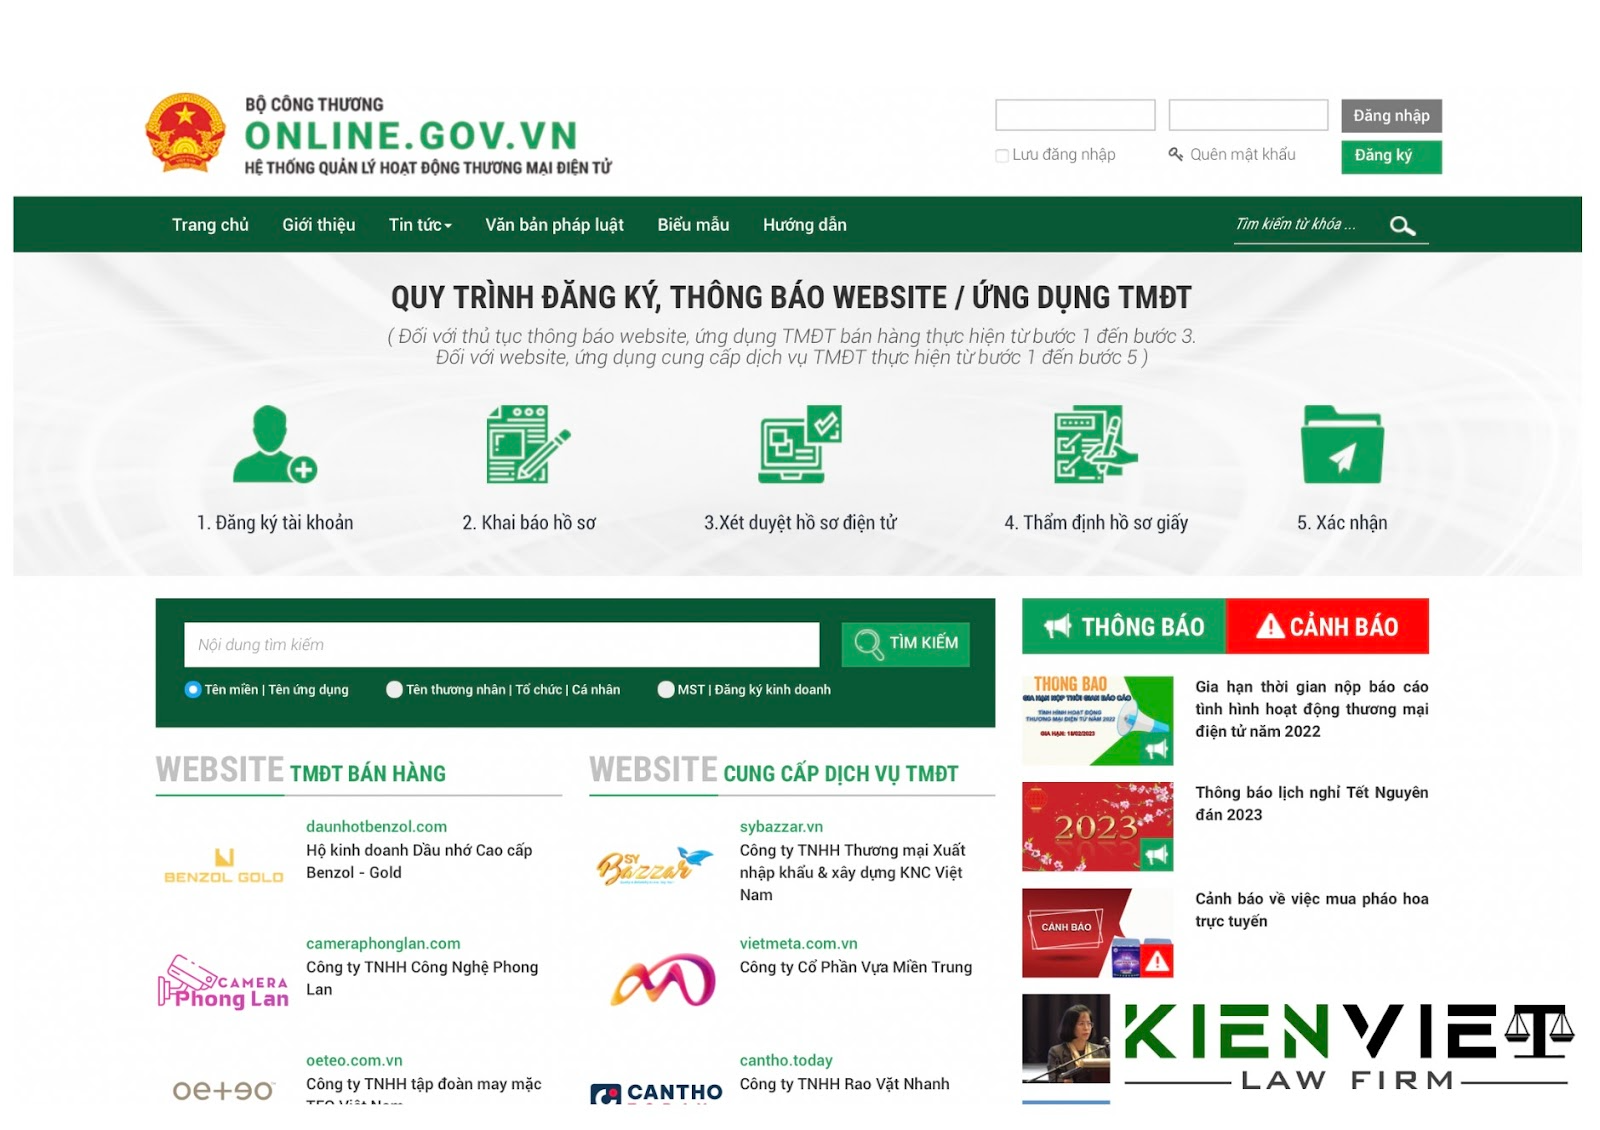 Thông báo và đăng ký website với Bộ Công thương theo quy định pháp luật